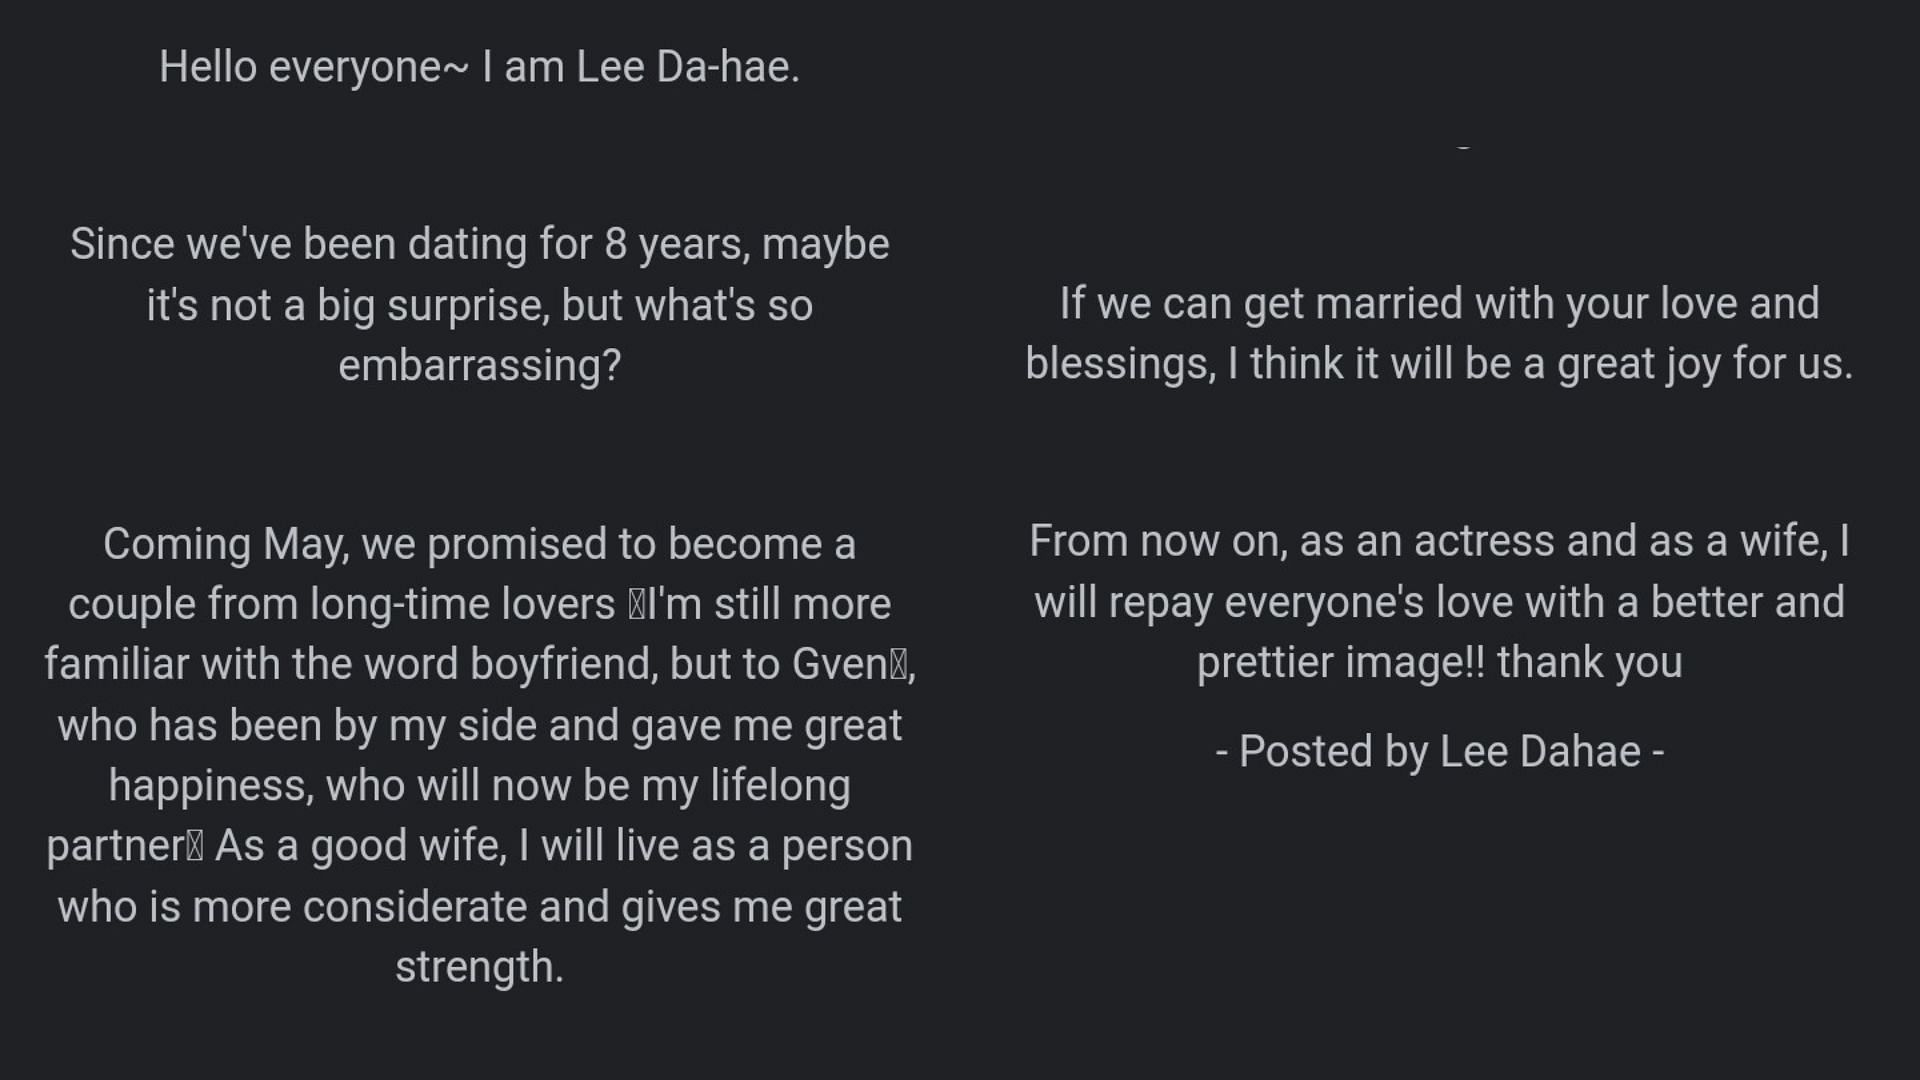 Lee Da-hae&#039;s wedding announcement (Image via Instagram)